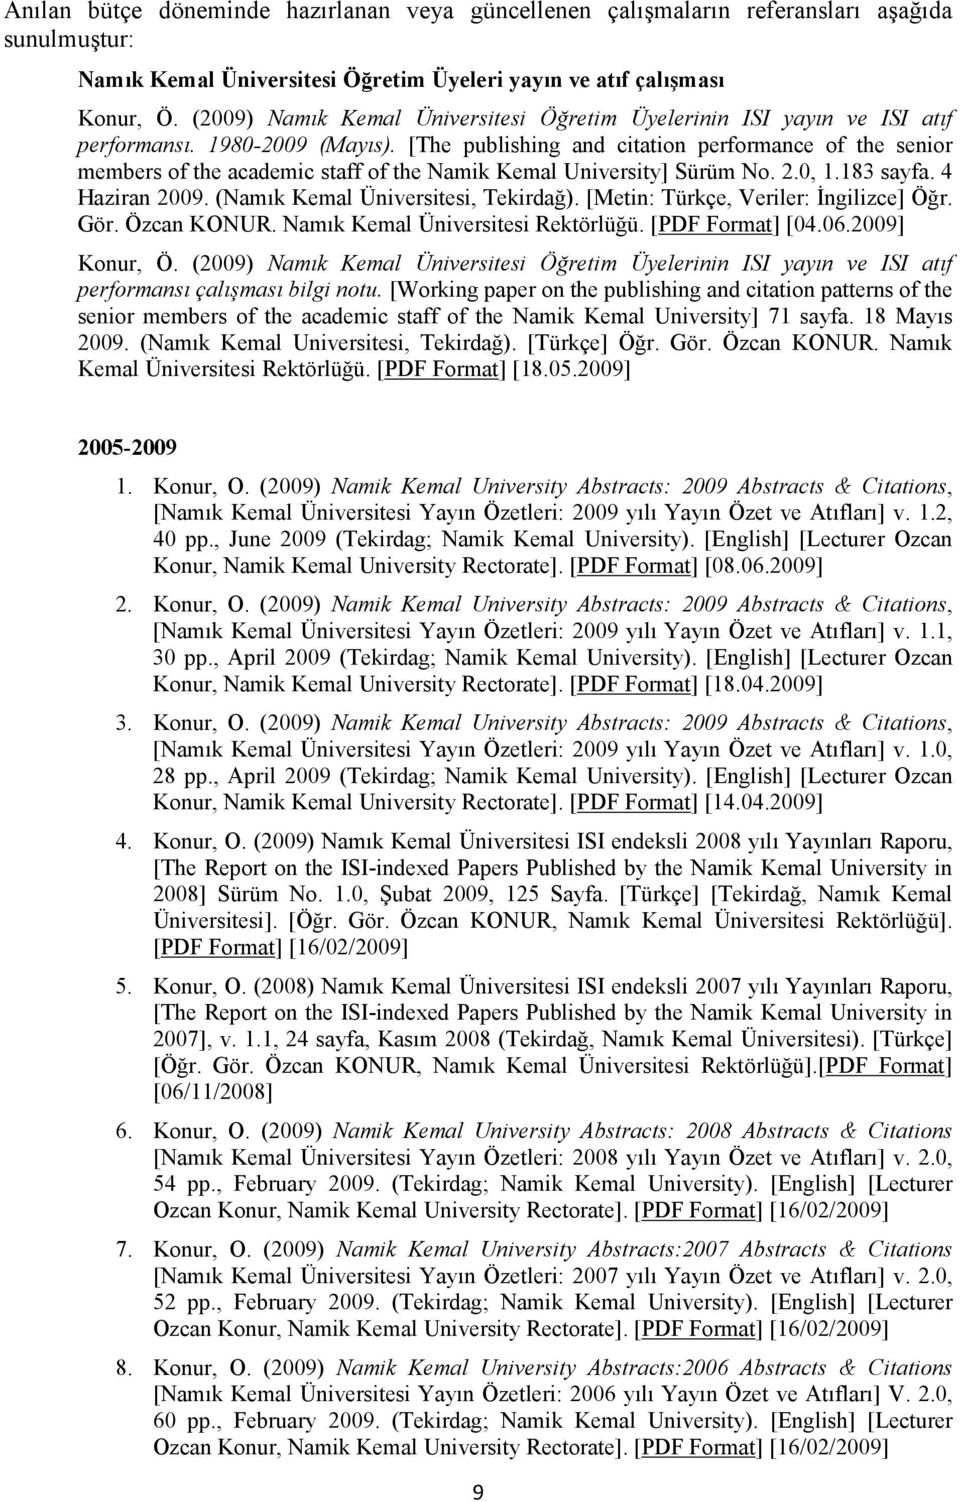 [The publishing and citation performance of the senior members of the academic staff of the Namik Kemal University] Sürüm No. 2.0, 1.183 sayfa. 4 Haziran 2009. (Namık Kemal Üniversitesi, Tekirdağ).